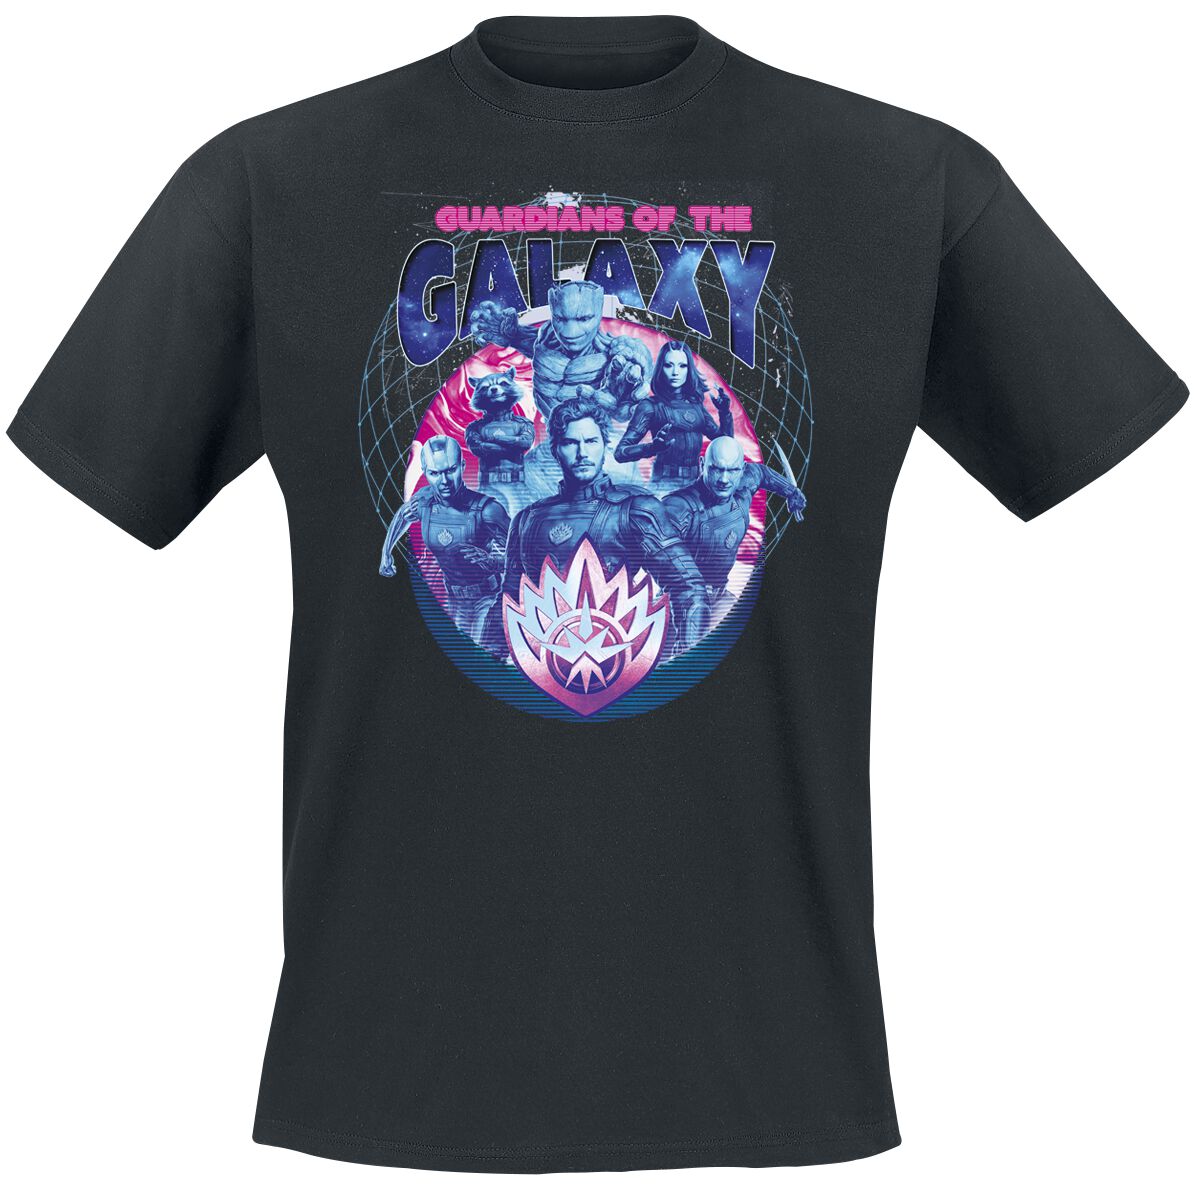 Guardians Of The Galaxy - Marvel T-Shirt - Vol. 3 - Guardians - S bis XXL - für Männer - Größe L - schwarz  - EMP exklusives Merchandise!